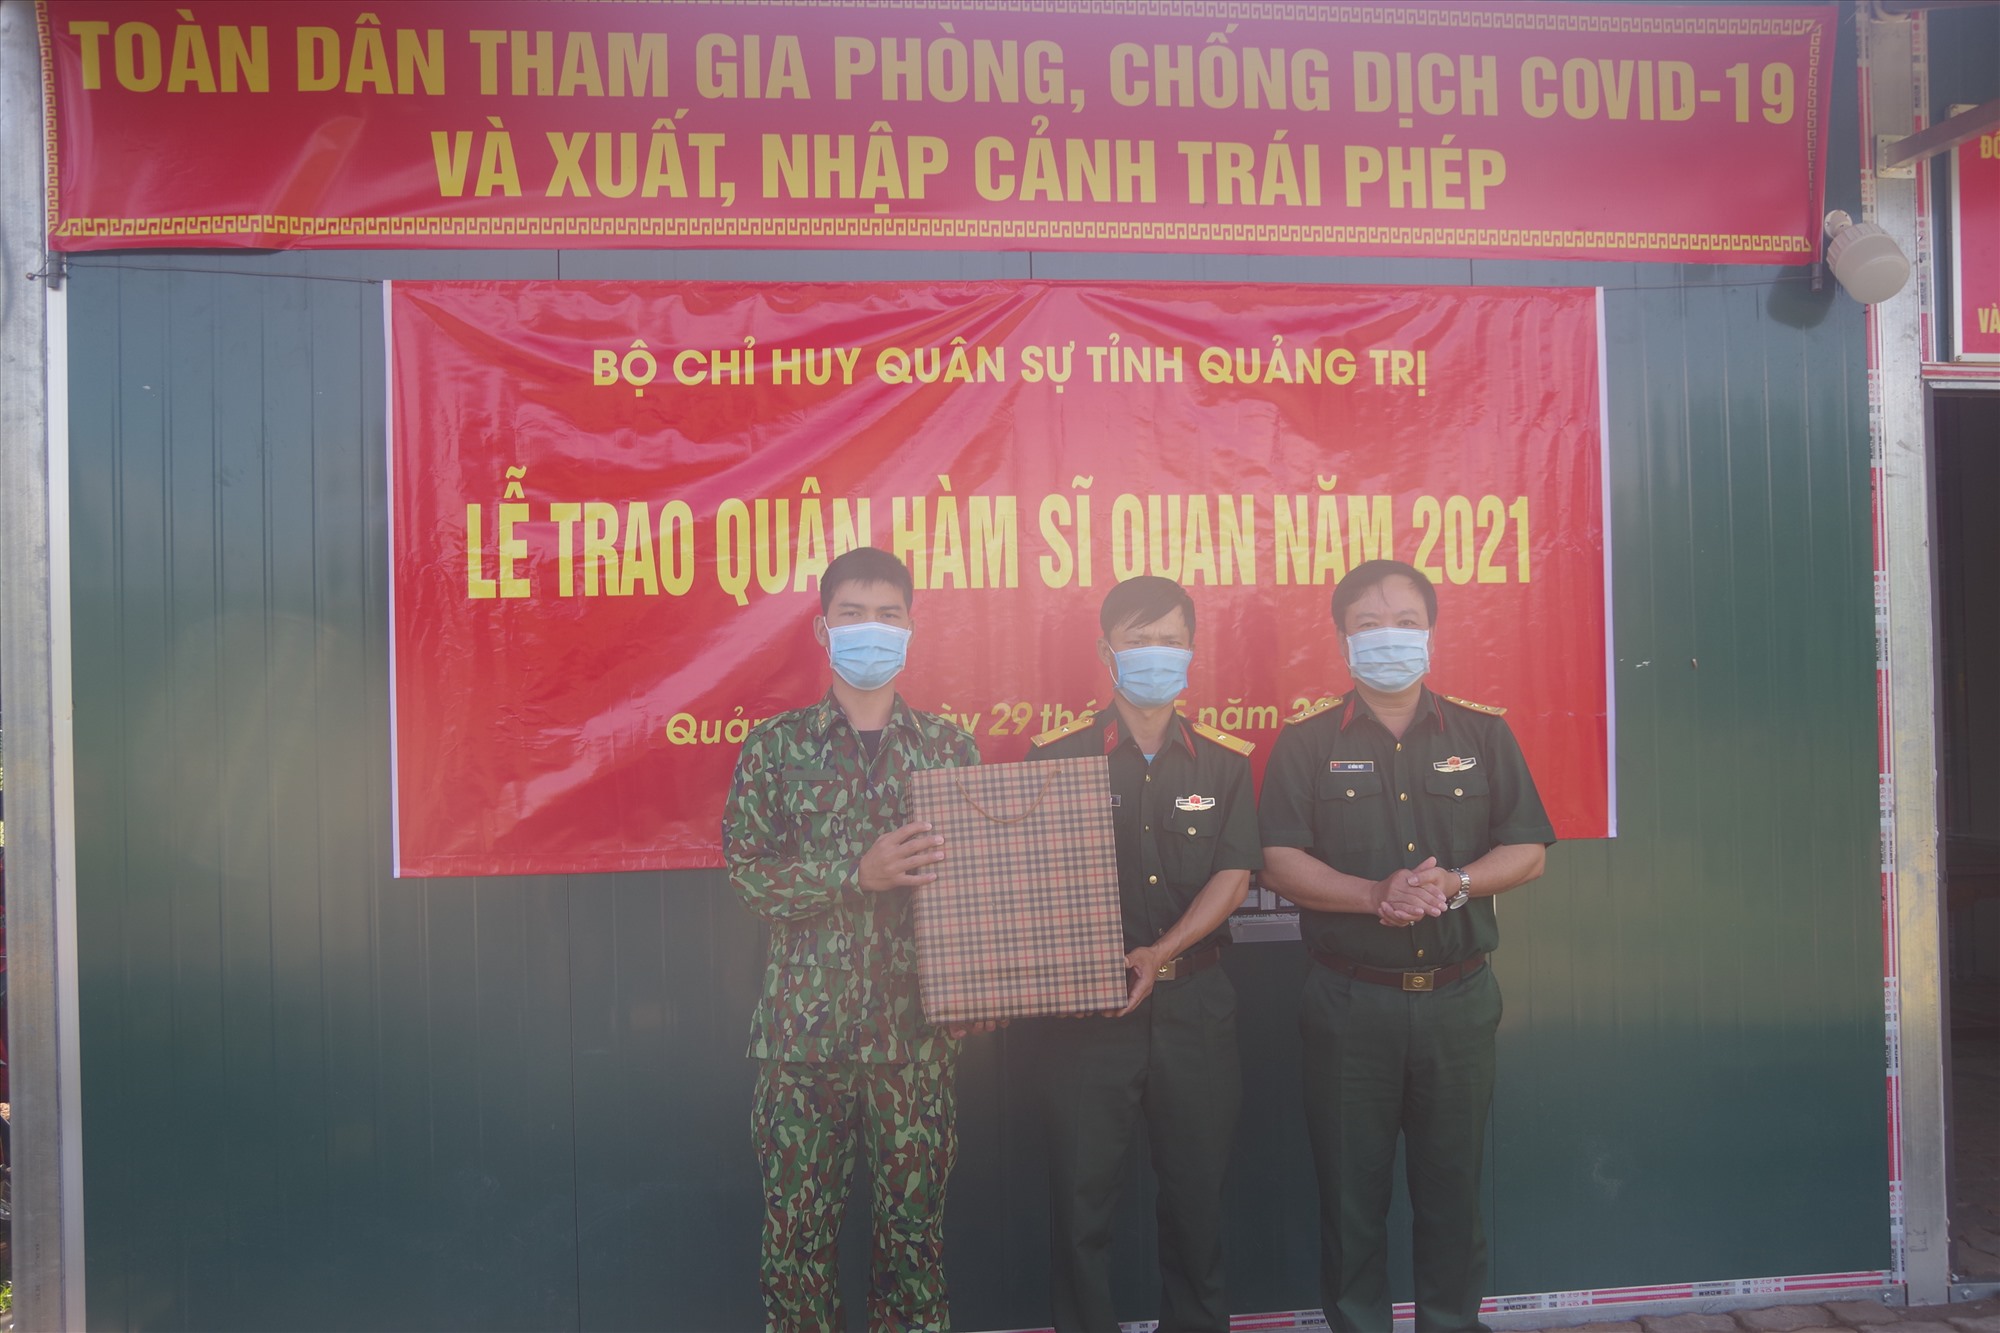 Đồng chí Thượng tá Võ Hồng Việt – Phó Chính ủy Bộ Chỉ huy Quân sự tỉnh trao quân hàm và động viên cán bộ, chiến sỹ tại các chốt chống dịch Covid-19